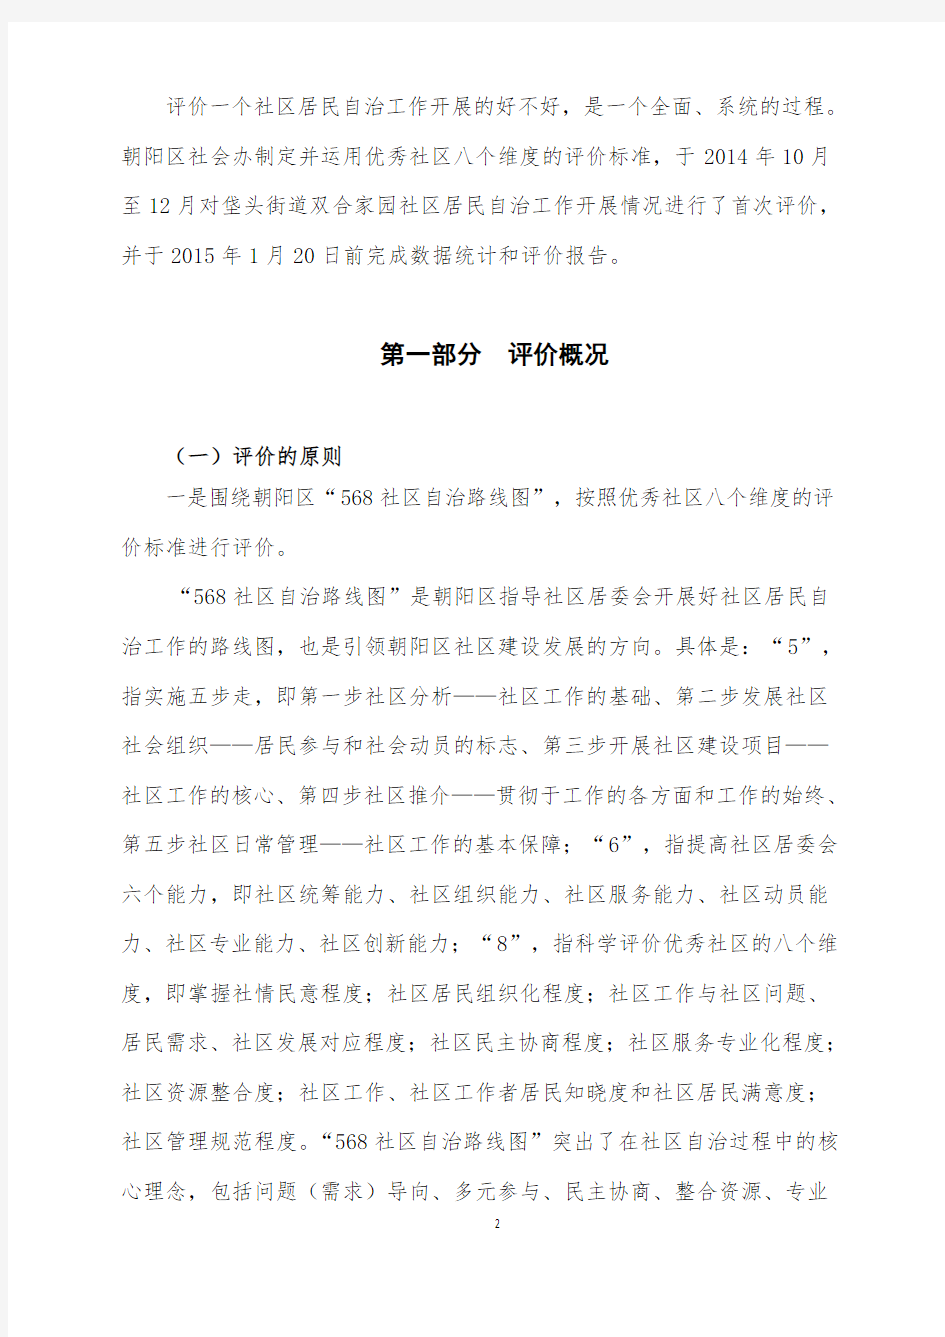 案例分析+北京市朝阳区社会建设工作办公室+朝阳区八个维度评价社区,以双合家园为例